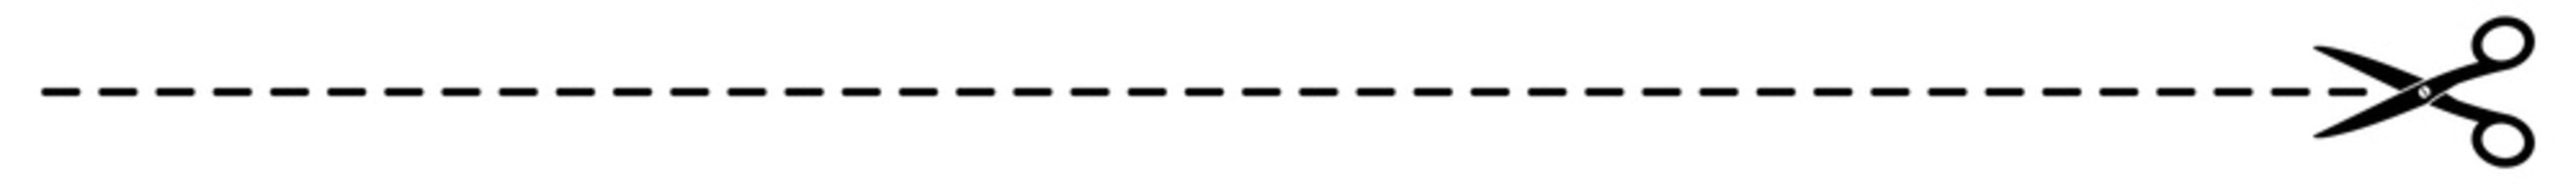 gz460 GrafikZeichnung - german: Schere Symbol mit Schnittlinien / Strichlinie - english: scissors with cut lines icon / dash line. simple template isolated on white background - banner 14to1 g8508